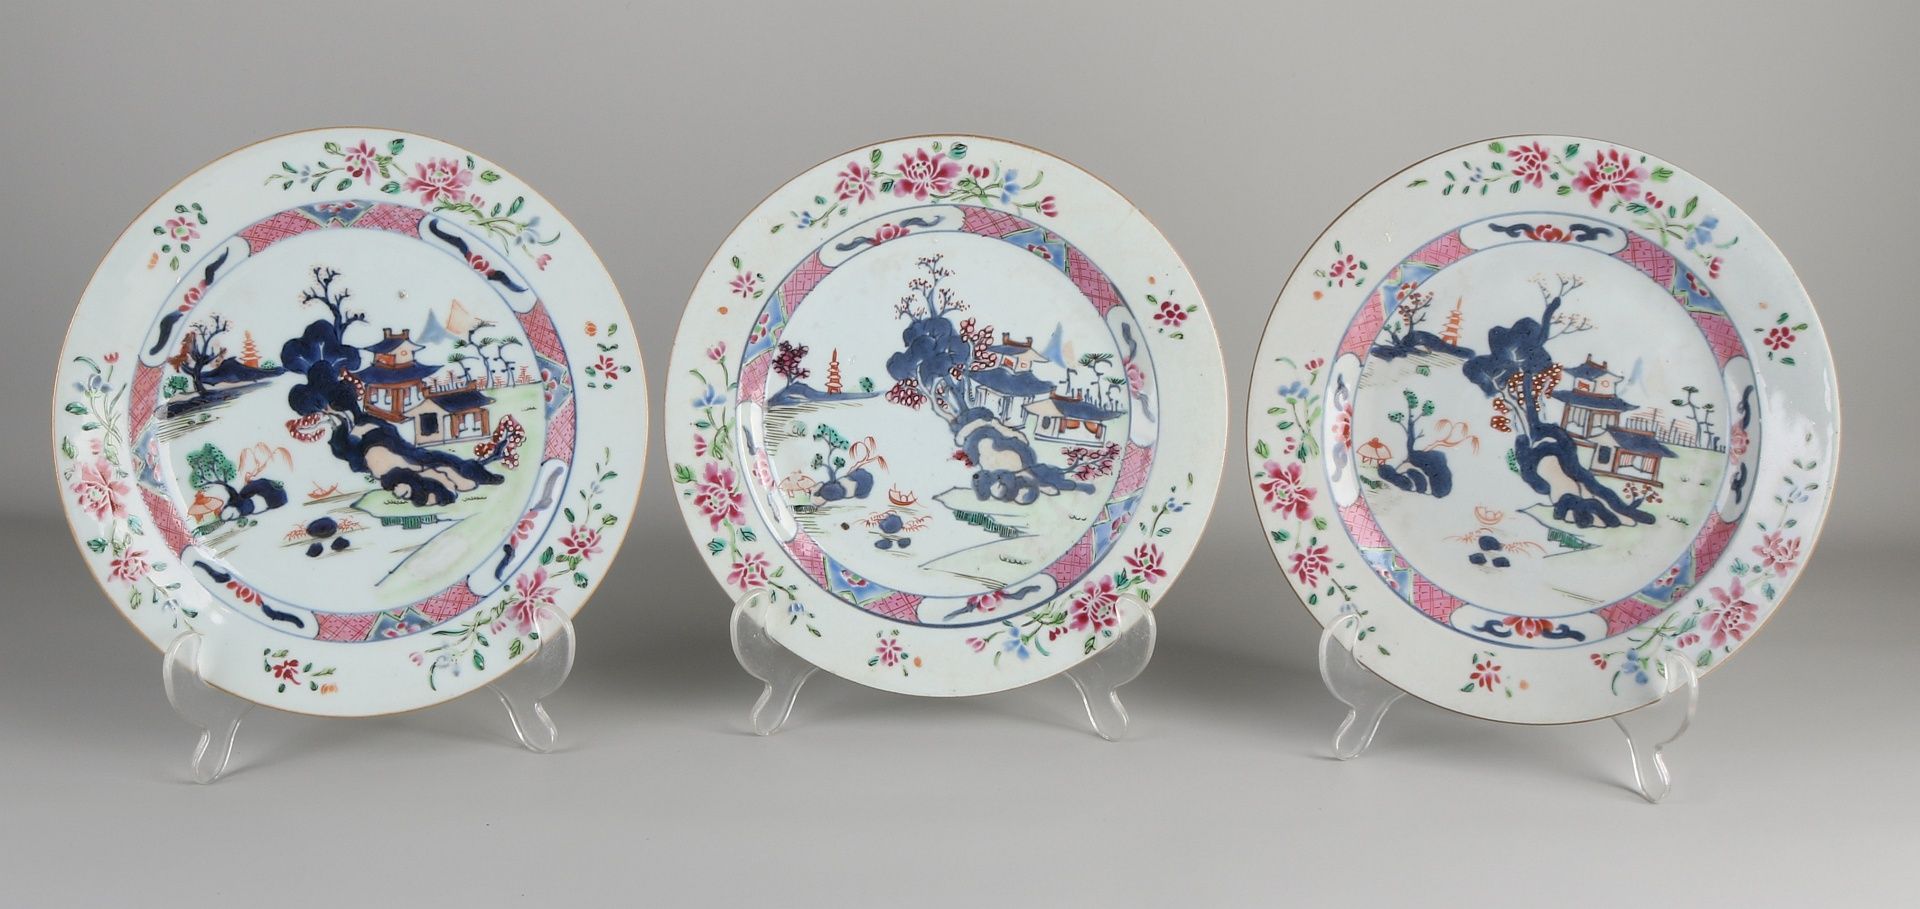 Drei chinesische Porzellanteller aus dem 18. Jahrhundert mit Landschaften und Pagodendekor. Zwei T